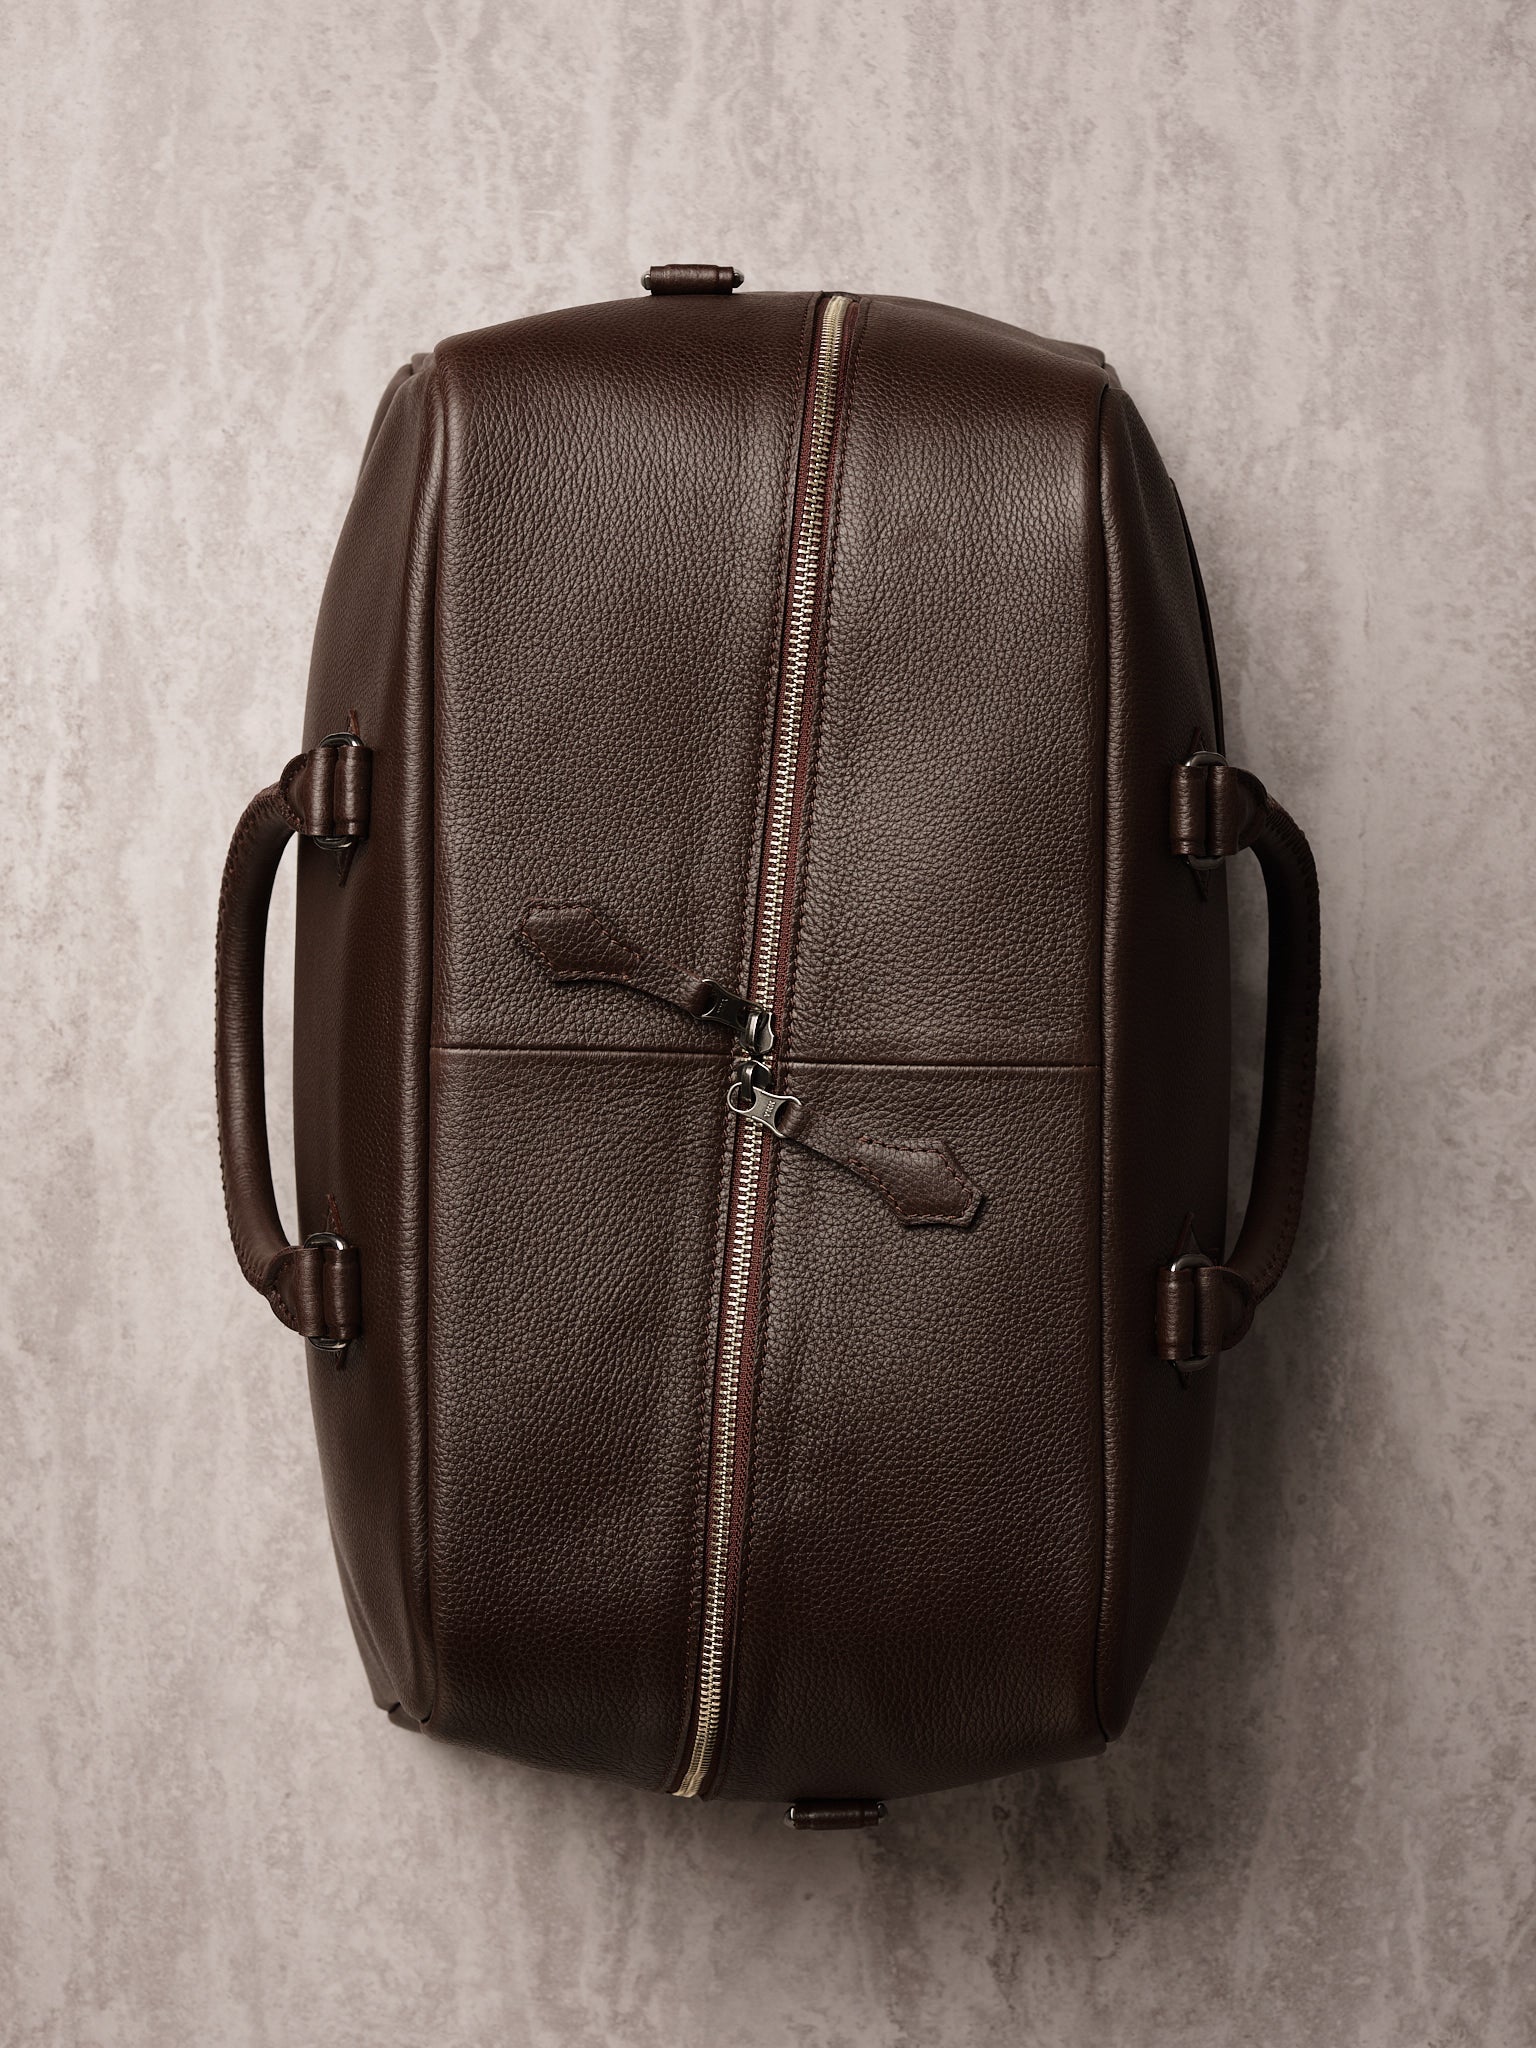 Cross-diagonal Zipper. Leather Weekender Bag Dark Brown by Capra Leather